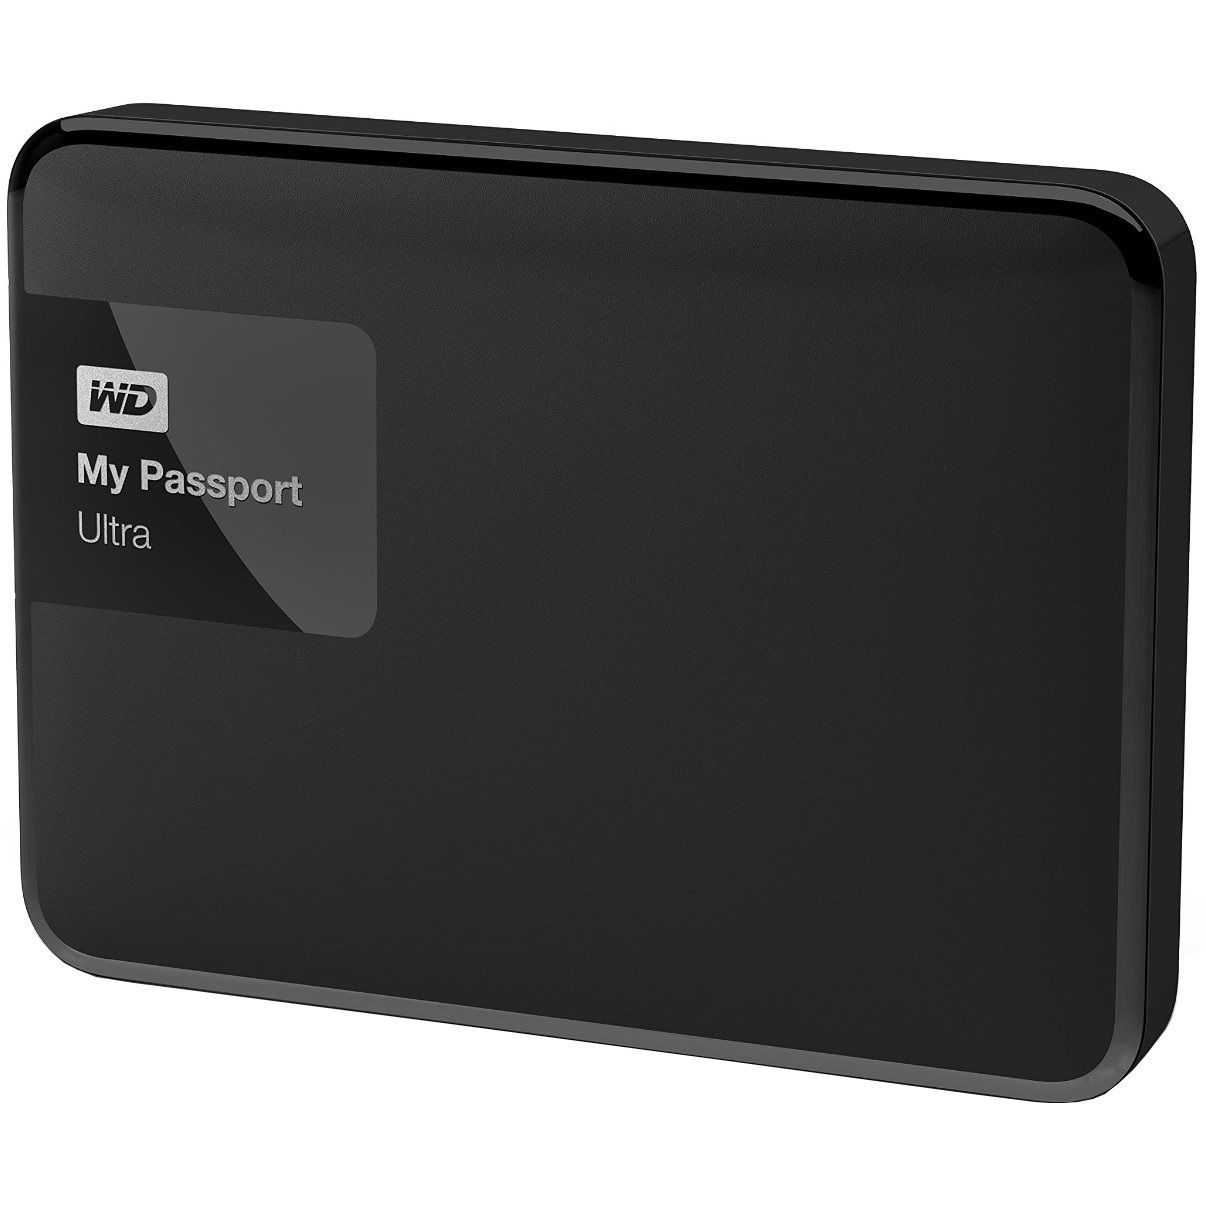  HDD extern WD My Passport Ultra 1TB, 2.5", USB 3.0, Negru 